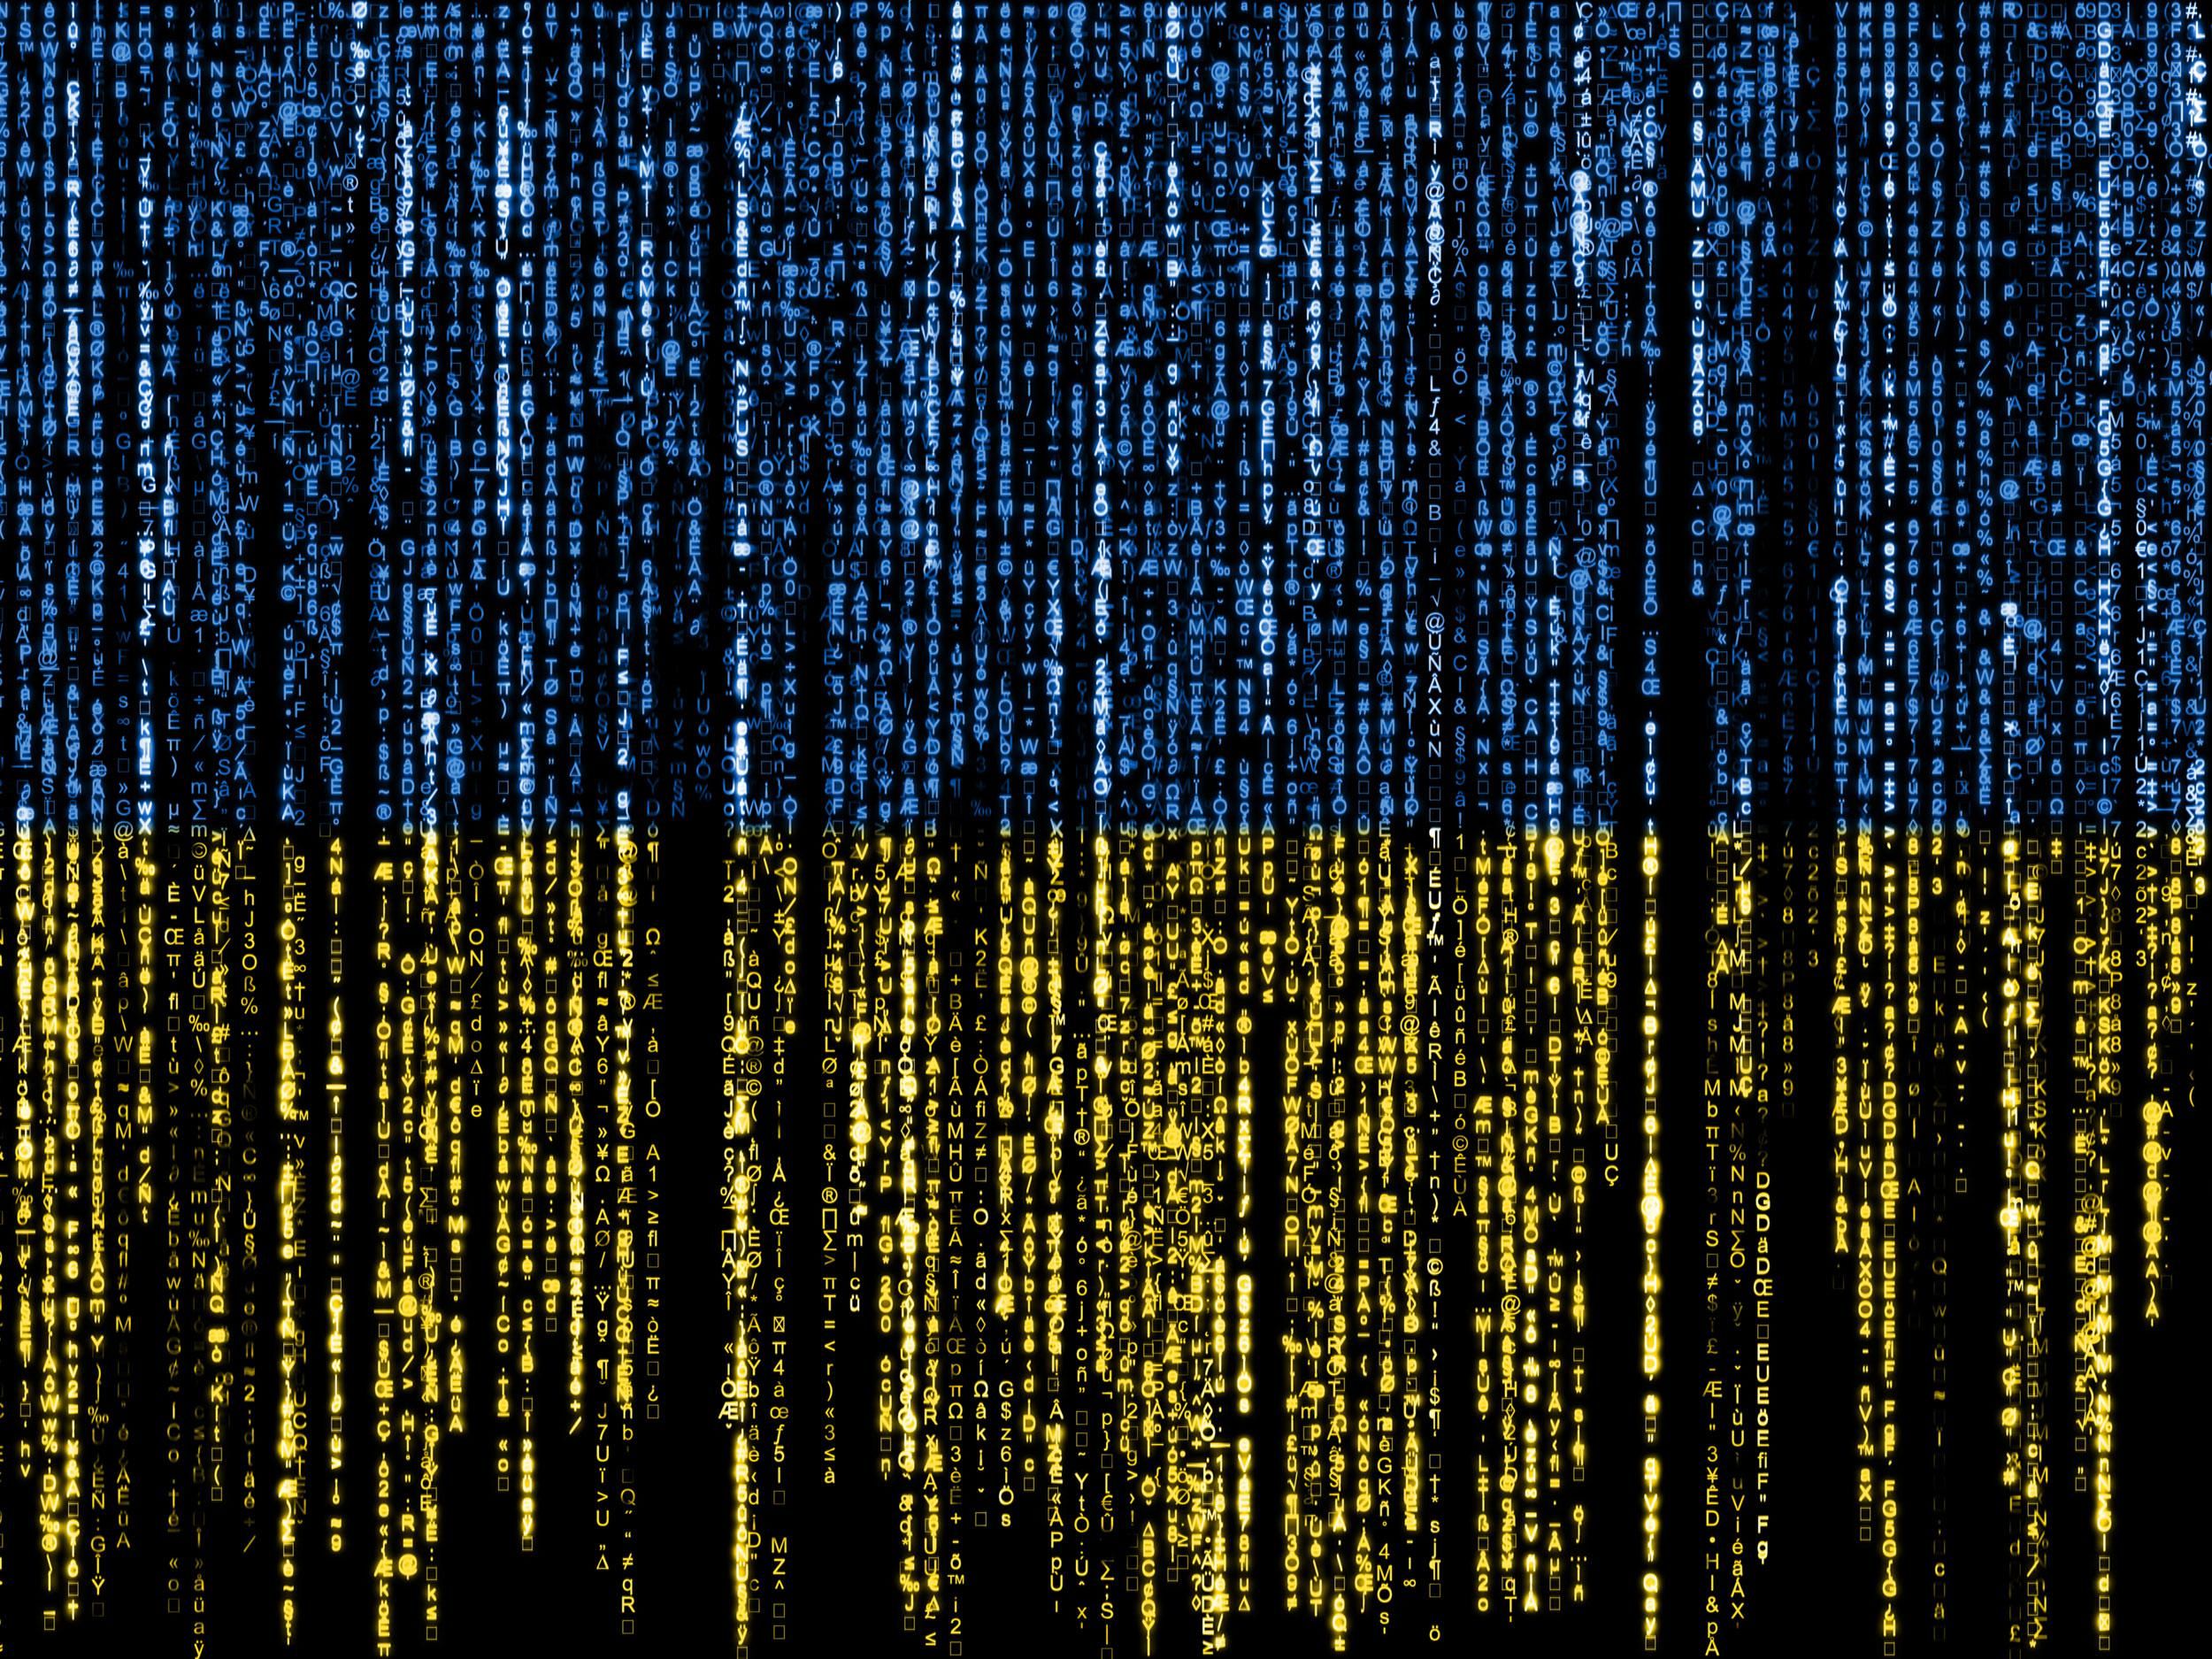 computer code in ukraine flag colors